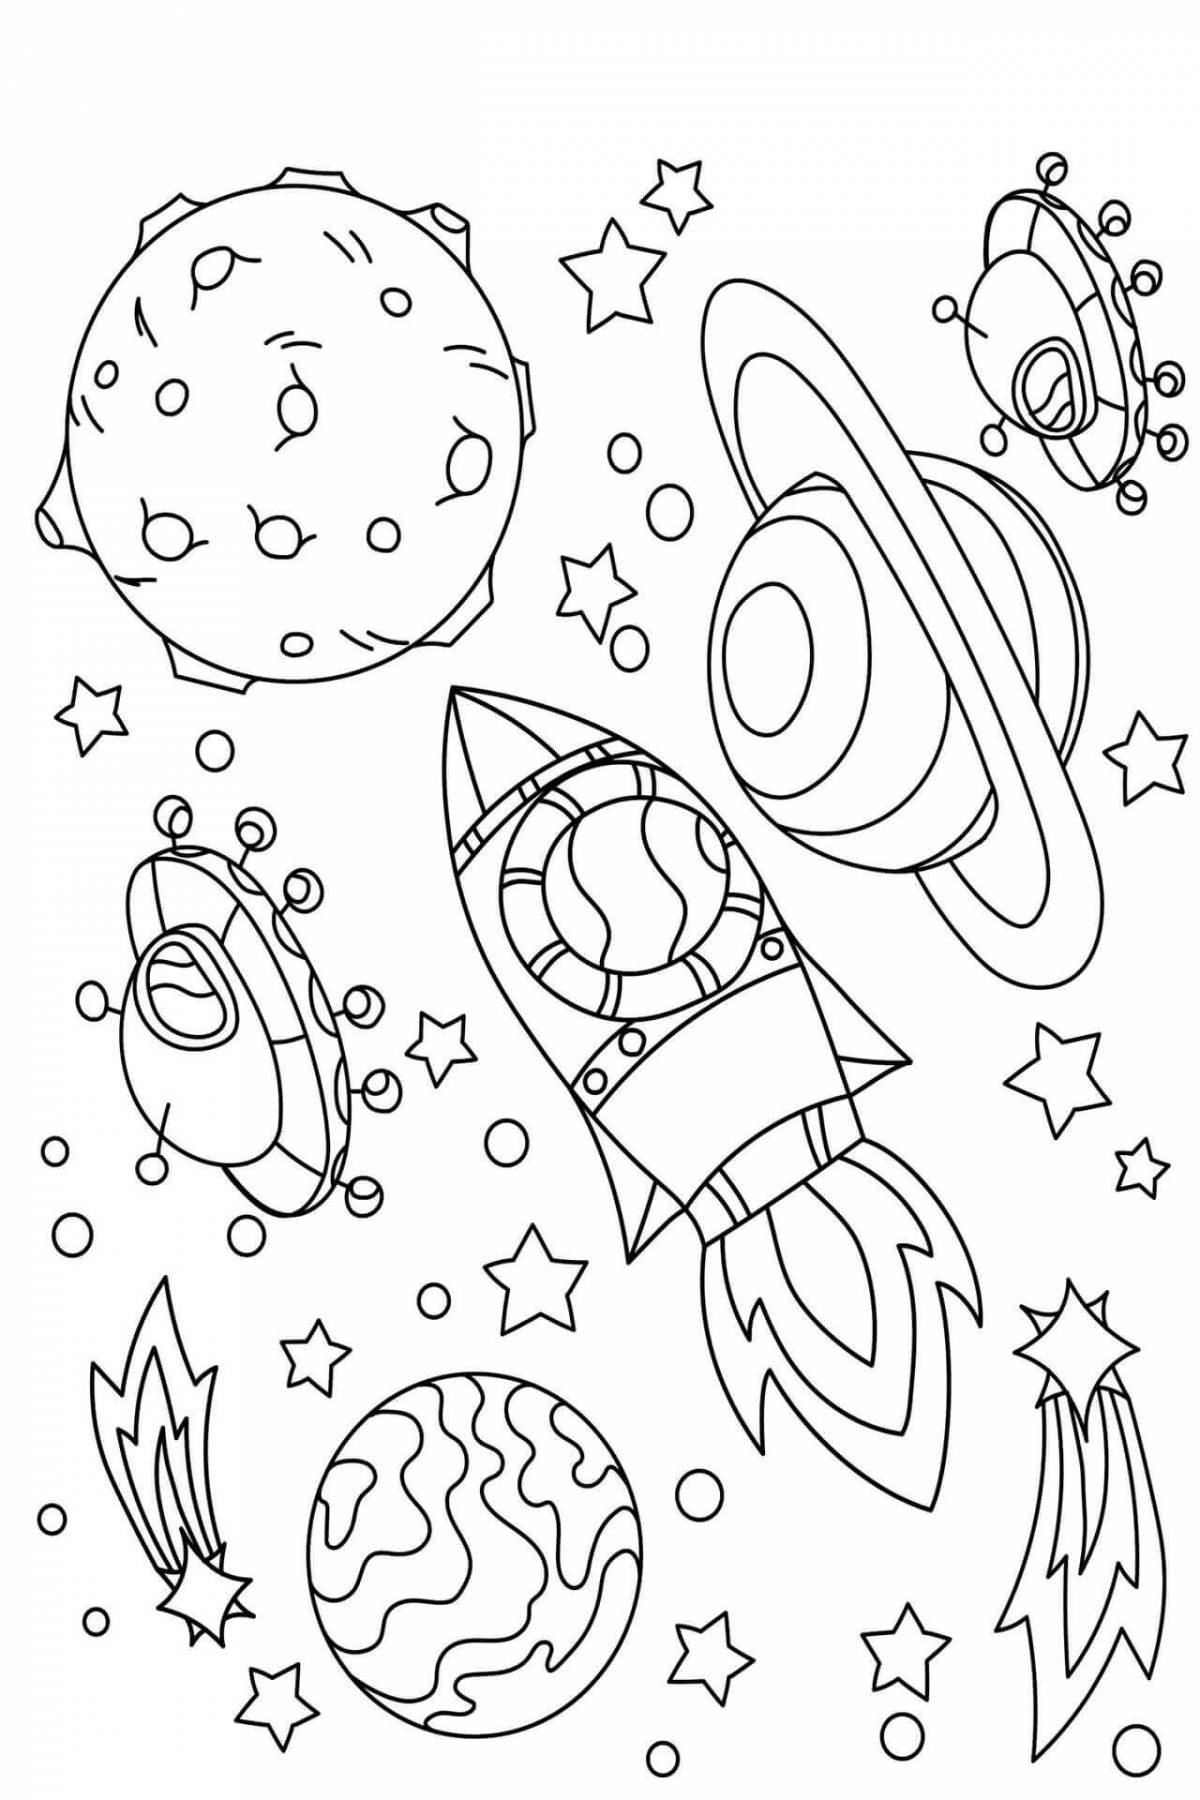 Раскраска космос для детей 4 5. Космос раскраска для детей. Раскраска космос для детей 6-7 лет. Раскраска. В космосе. Раскраски космос для детей 4-5 лет.